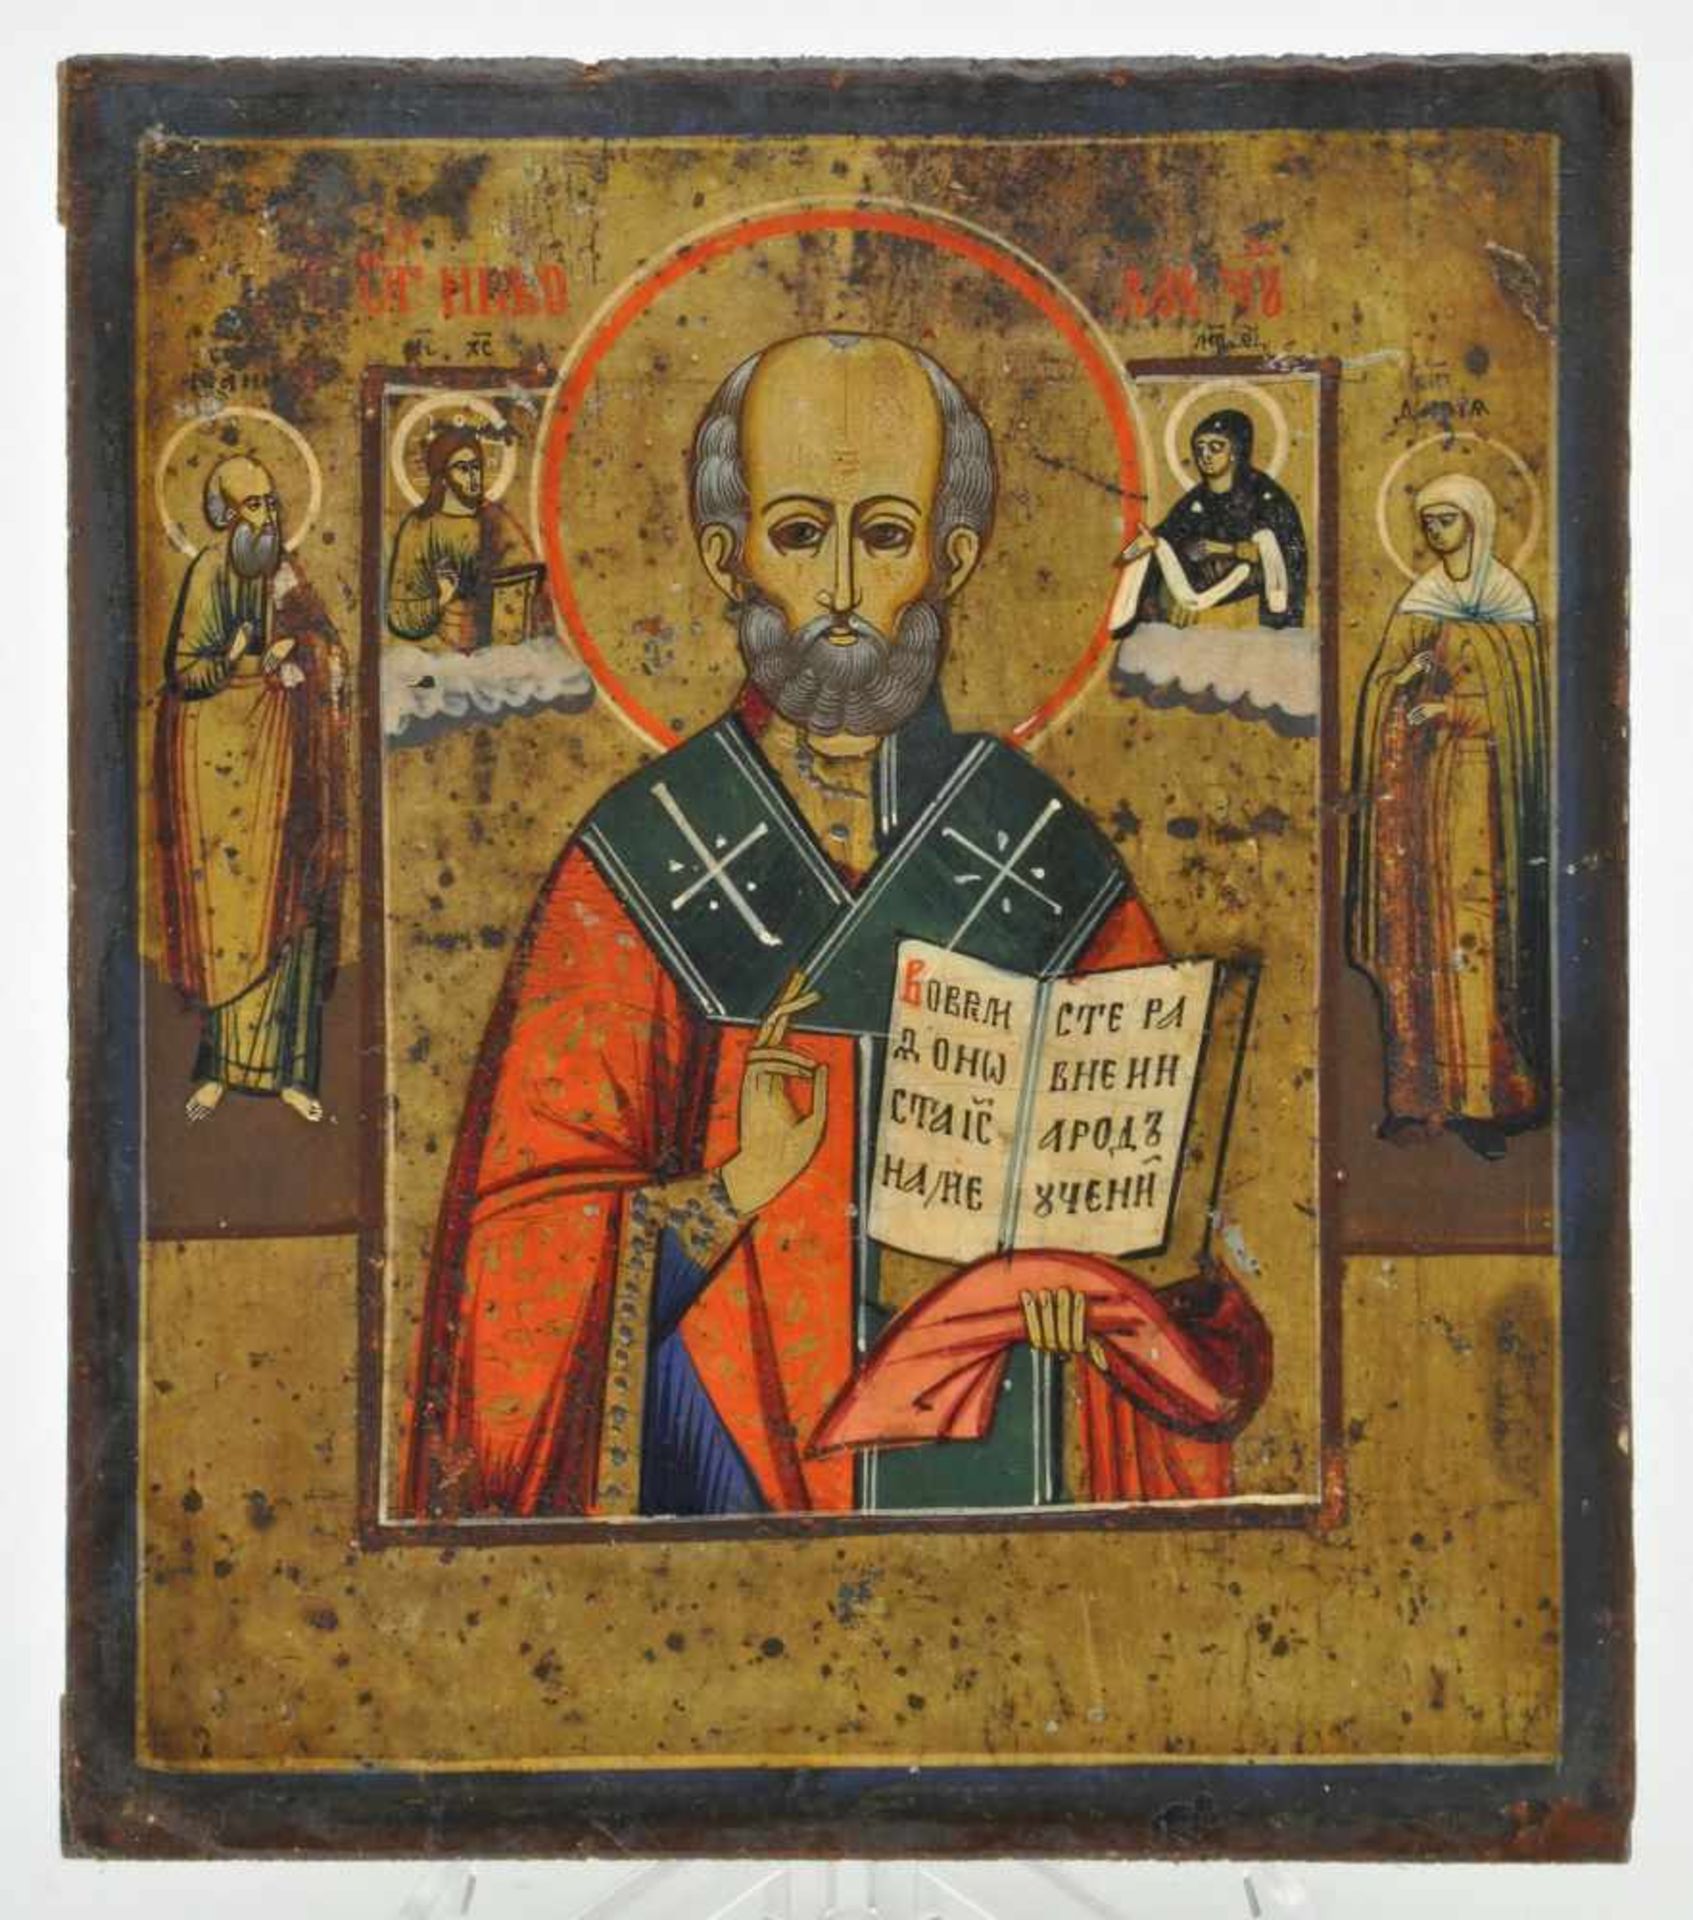 Ikone (Russland 19. Jh.) "Der Heilige Nikolaus", 18,0 x 15,0 cm, Ei-Tempera auf Holz,